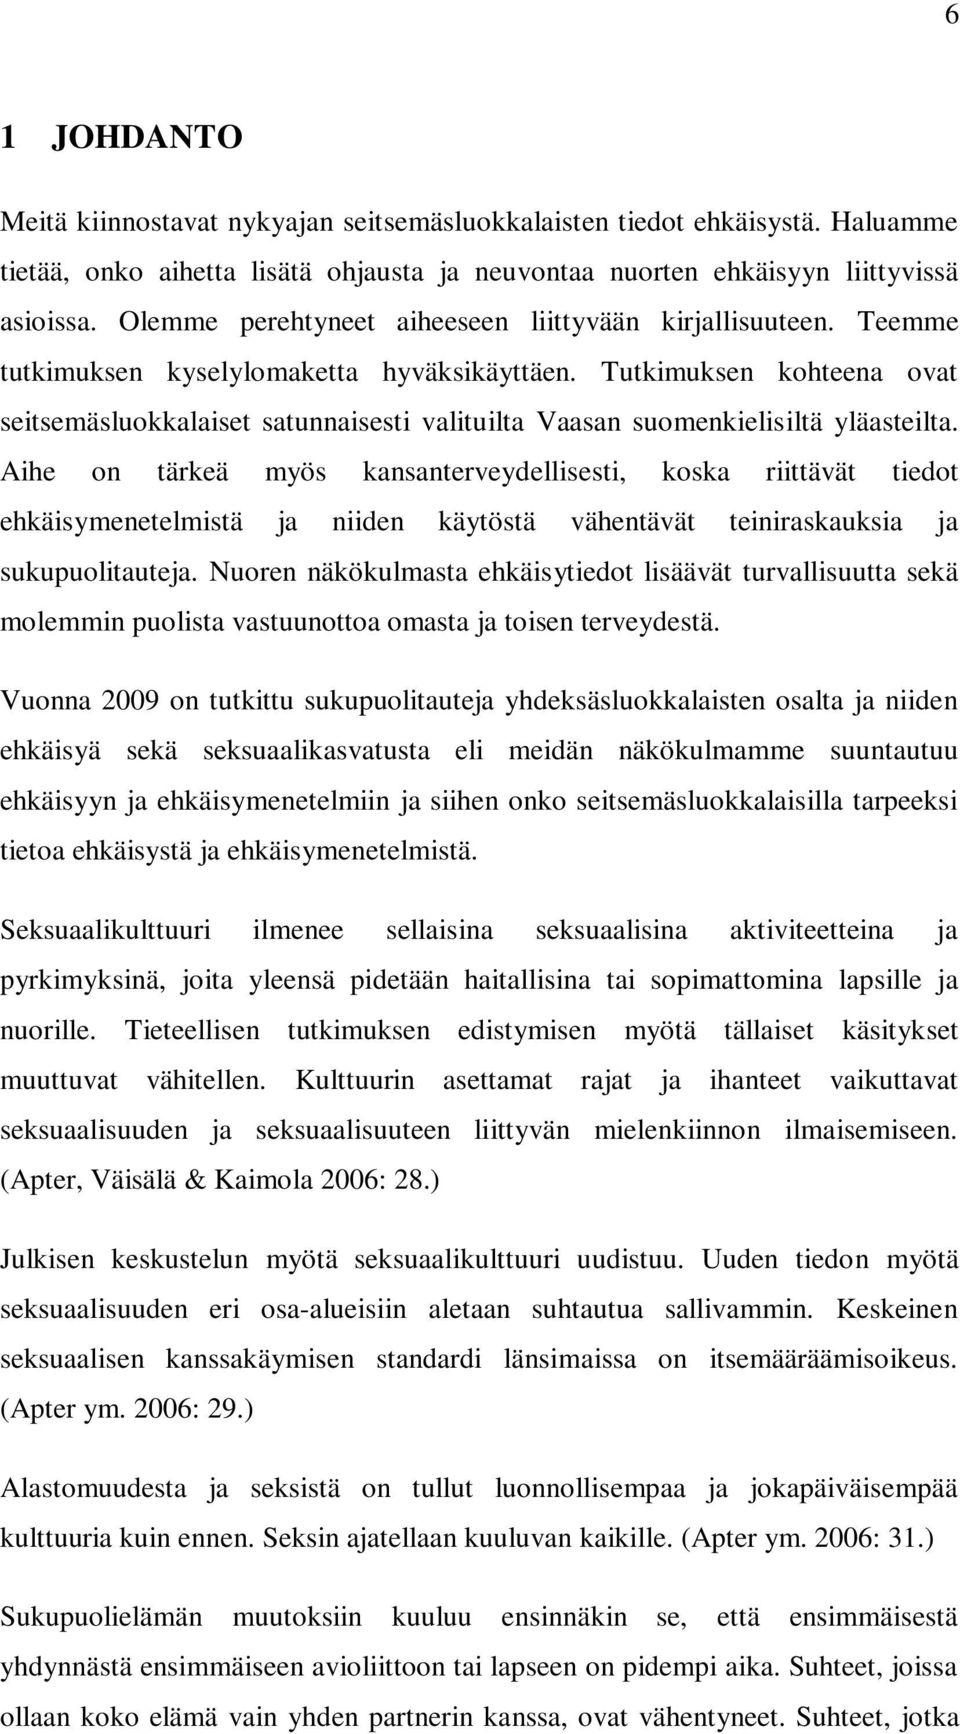 Tutkimuksen kohteena ovat seitsemäsluokkalaiset satunnaisesti valituilta Vaasan suomenkielisiltä yläasteilta.